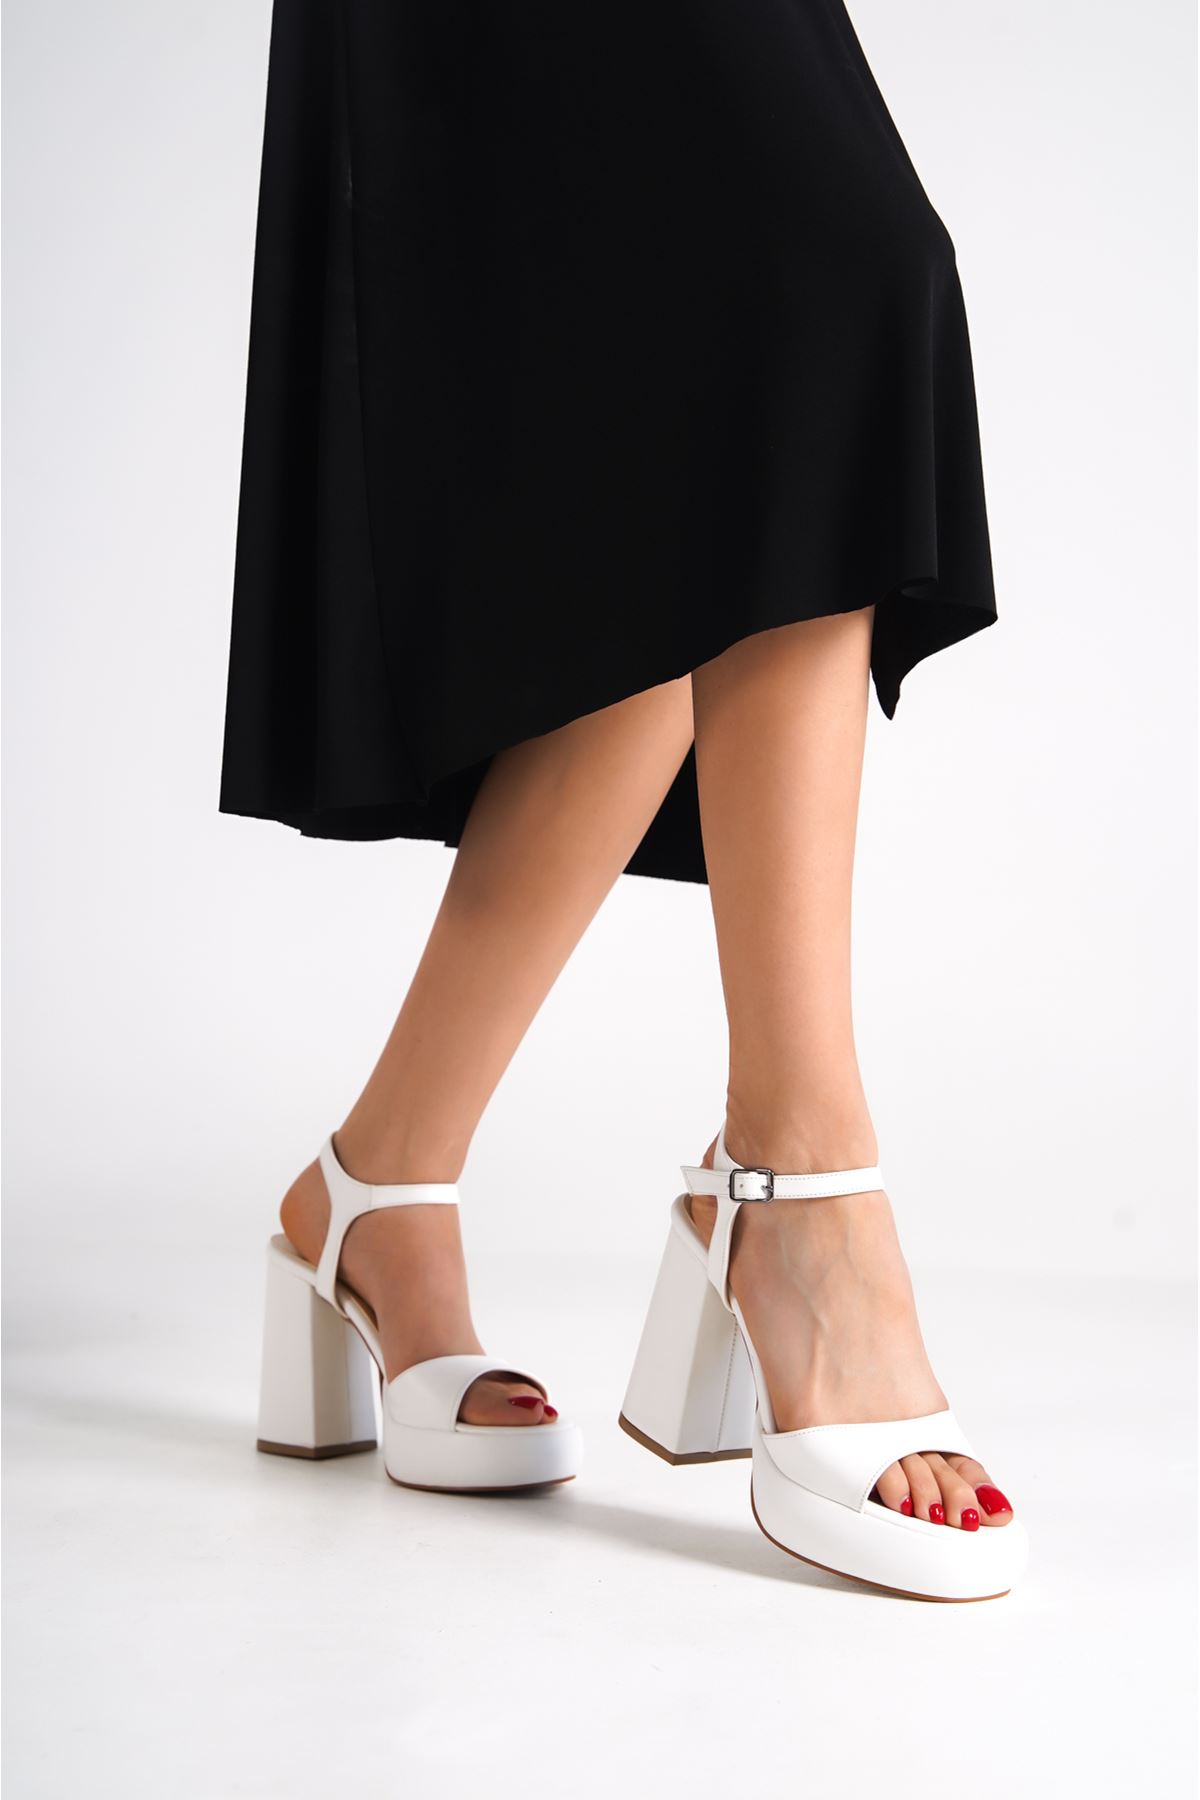 Faye Beyaz Mat Deri Dolgu Topuklu Kadın Ayakkabı